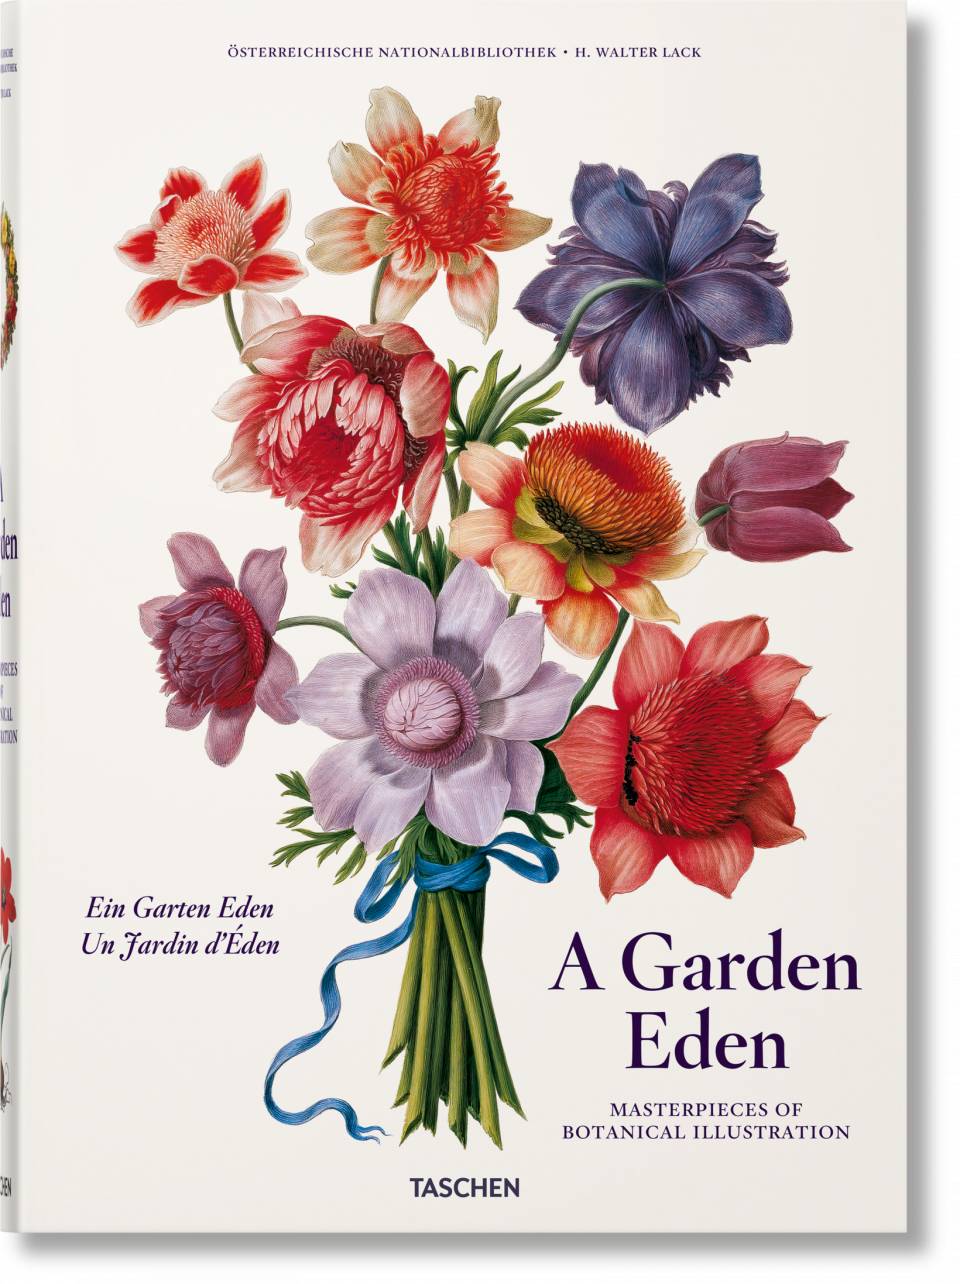 A Garden Eden. Masterpieces of Botanical Illustration. PRE-ORDER